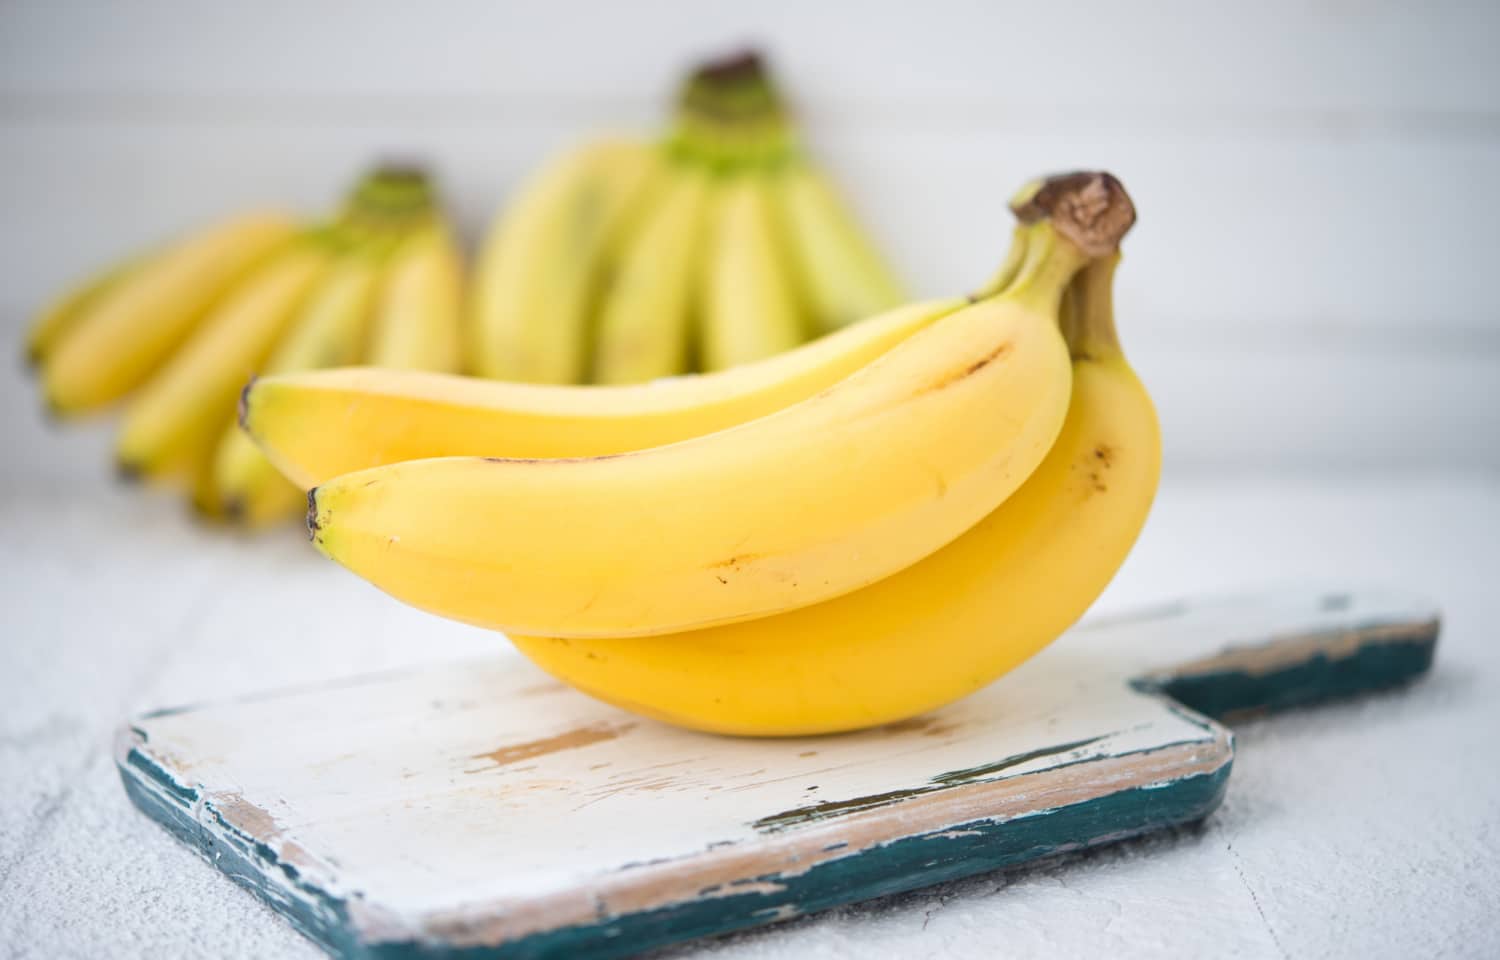 Napi 3 banán csodát művel az egészségeddel